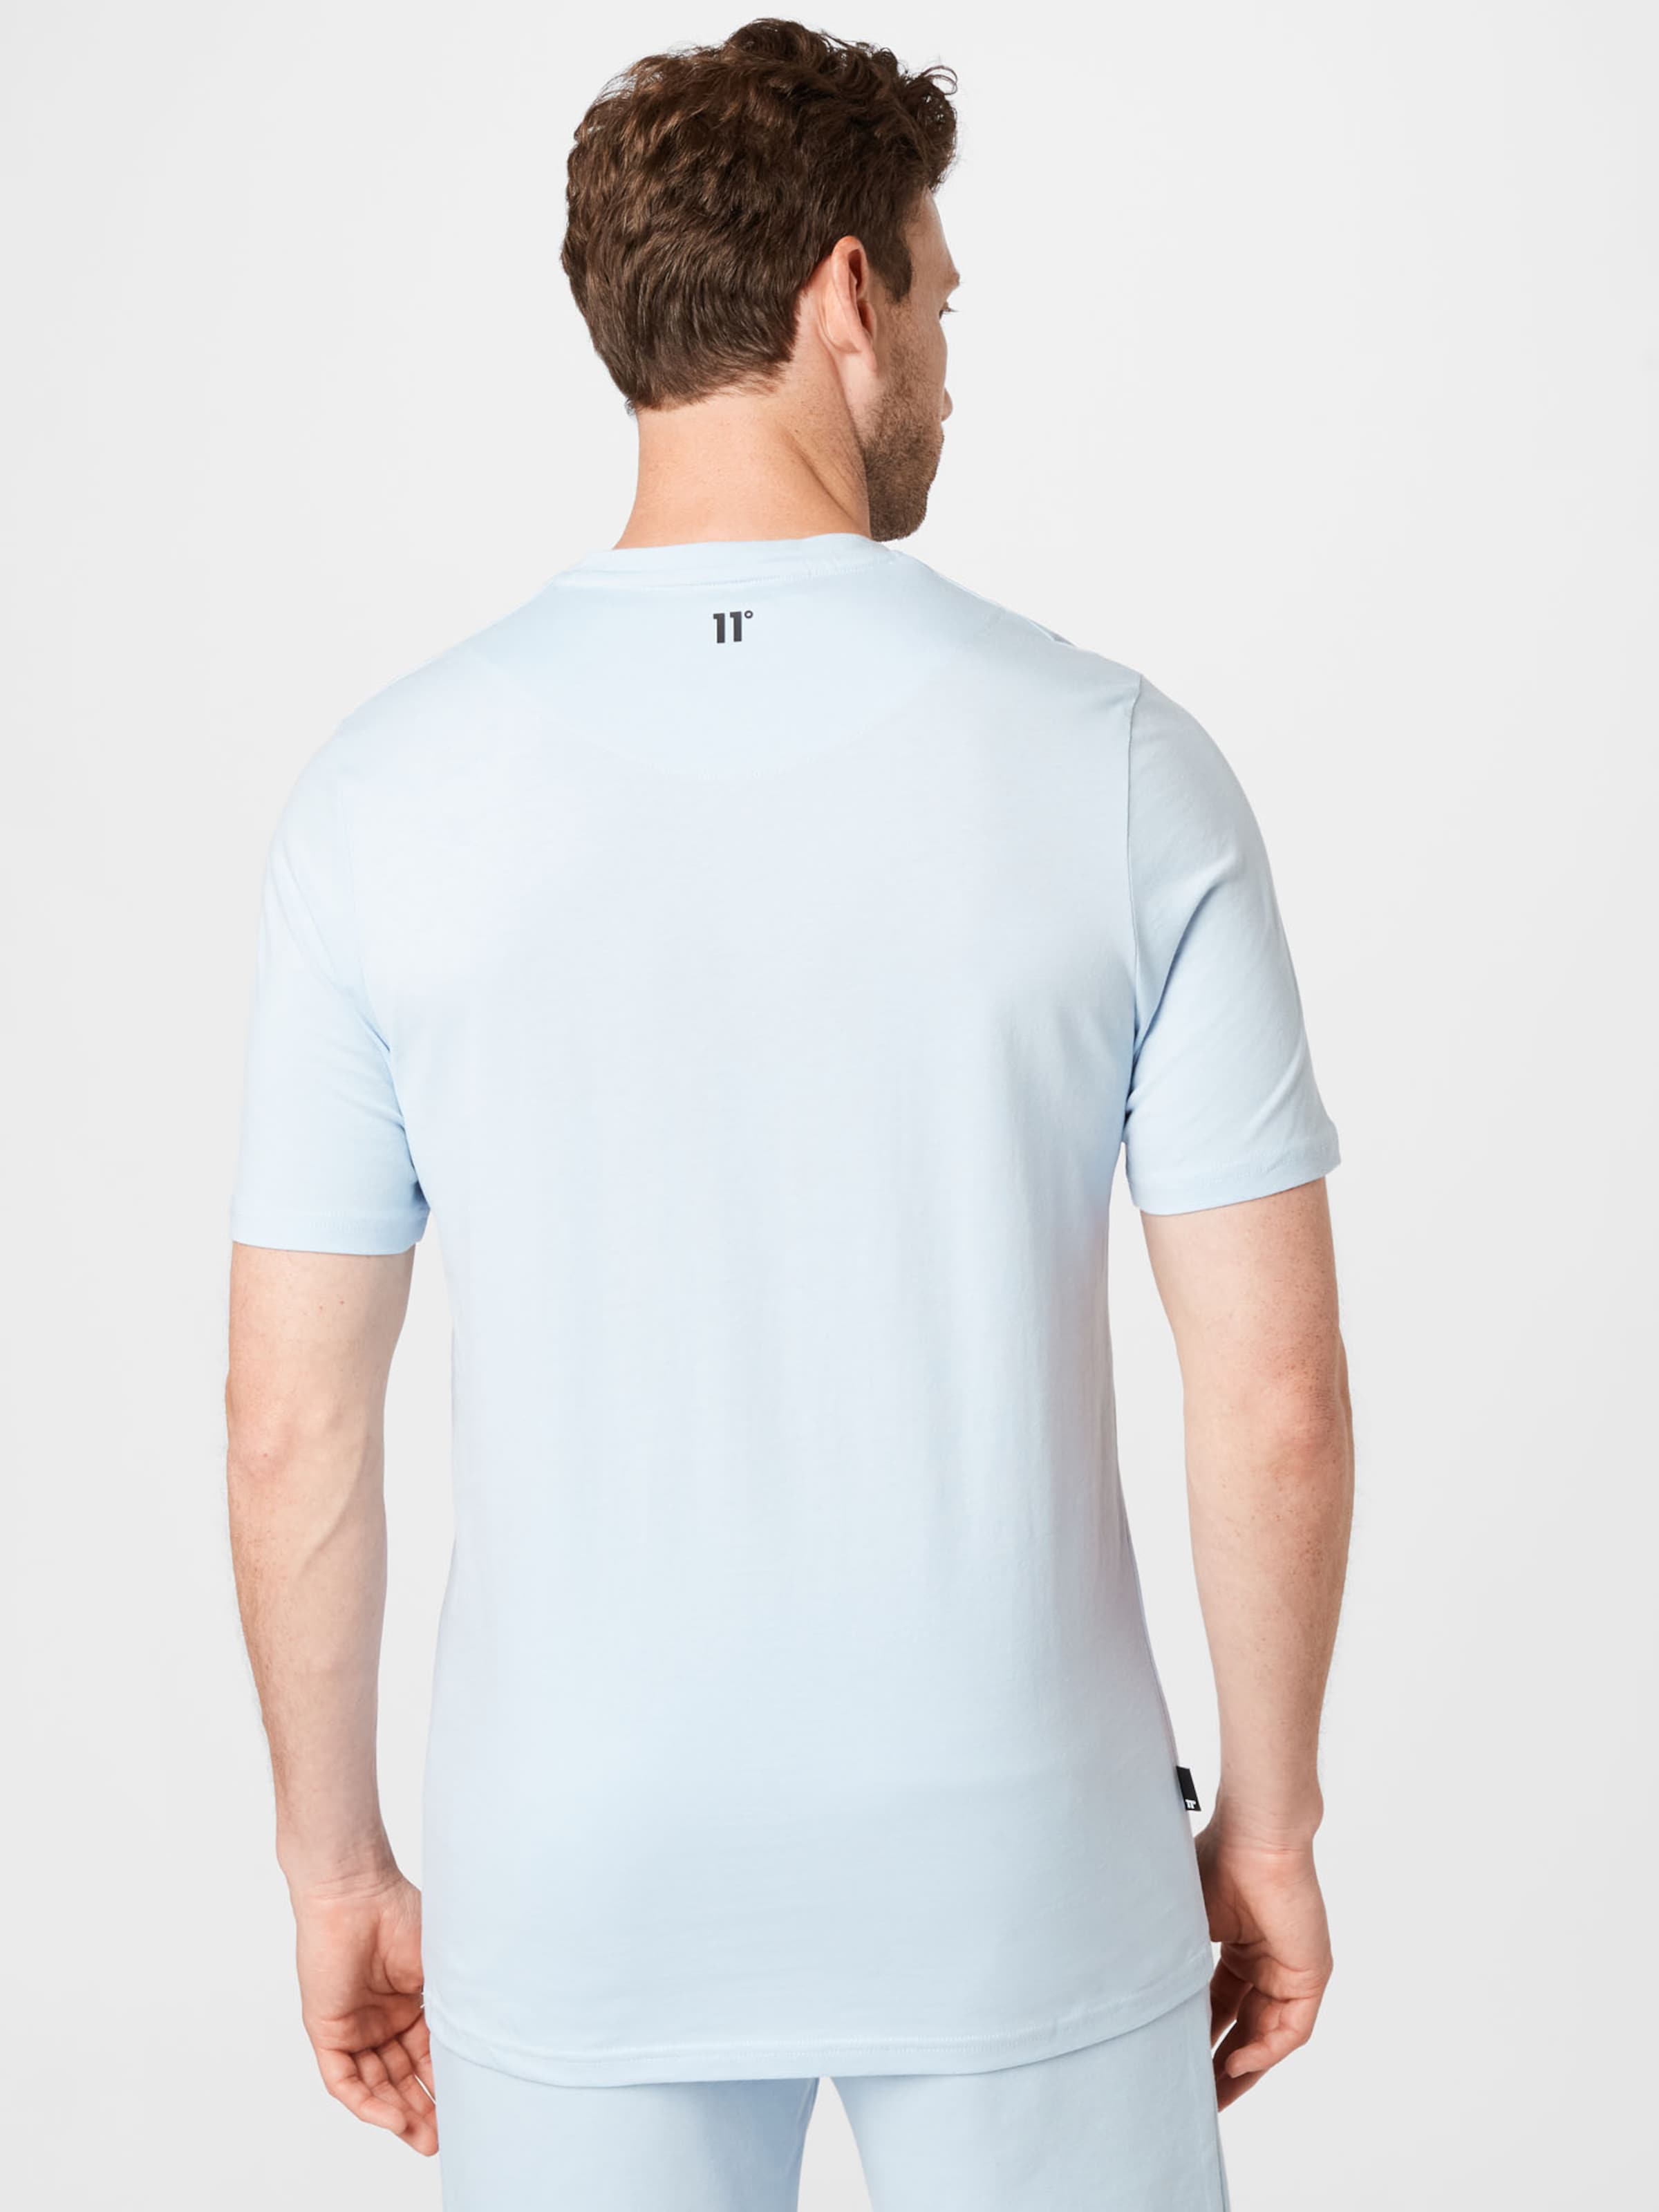 Männer Shirts 11 Degrees T-Shirt in Nachtblau, Himmelblau - PH42991